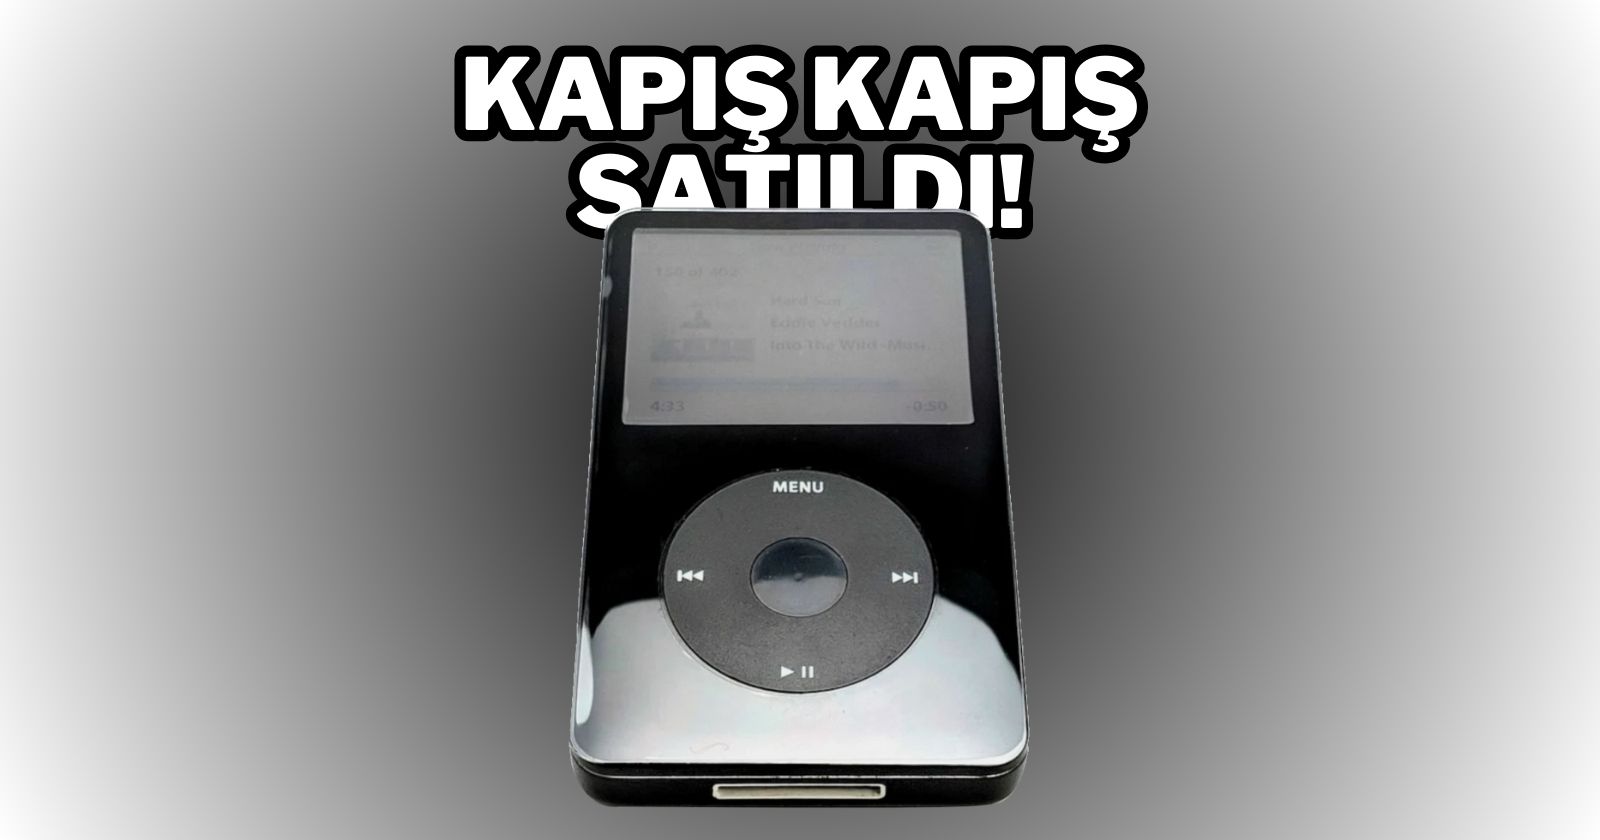 16 yıllık yenilenmiş iPod’lar kapış kapış satıldı!